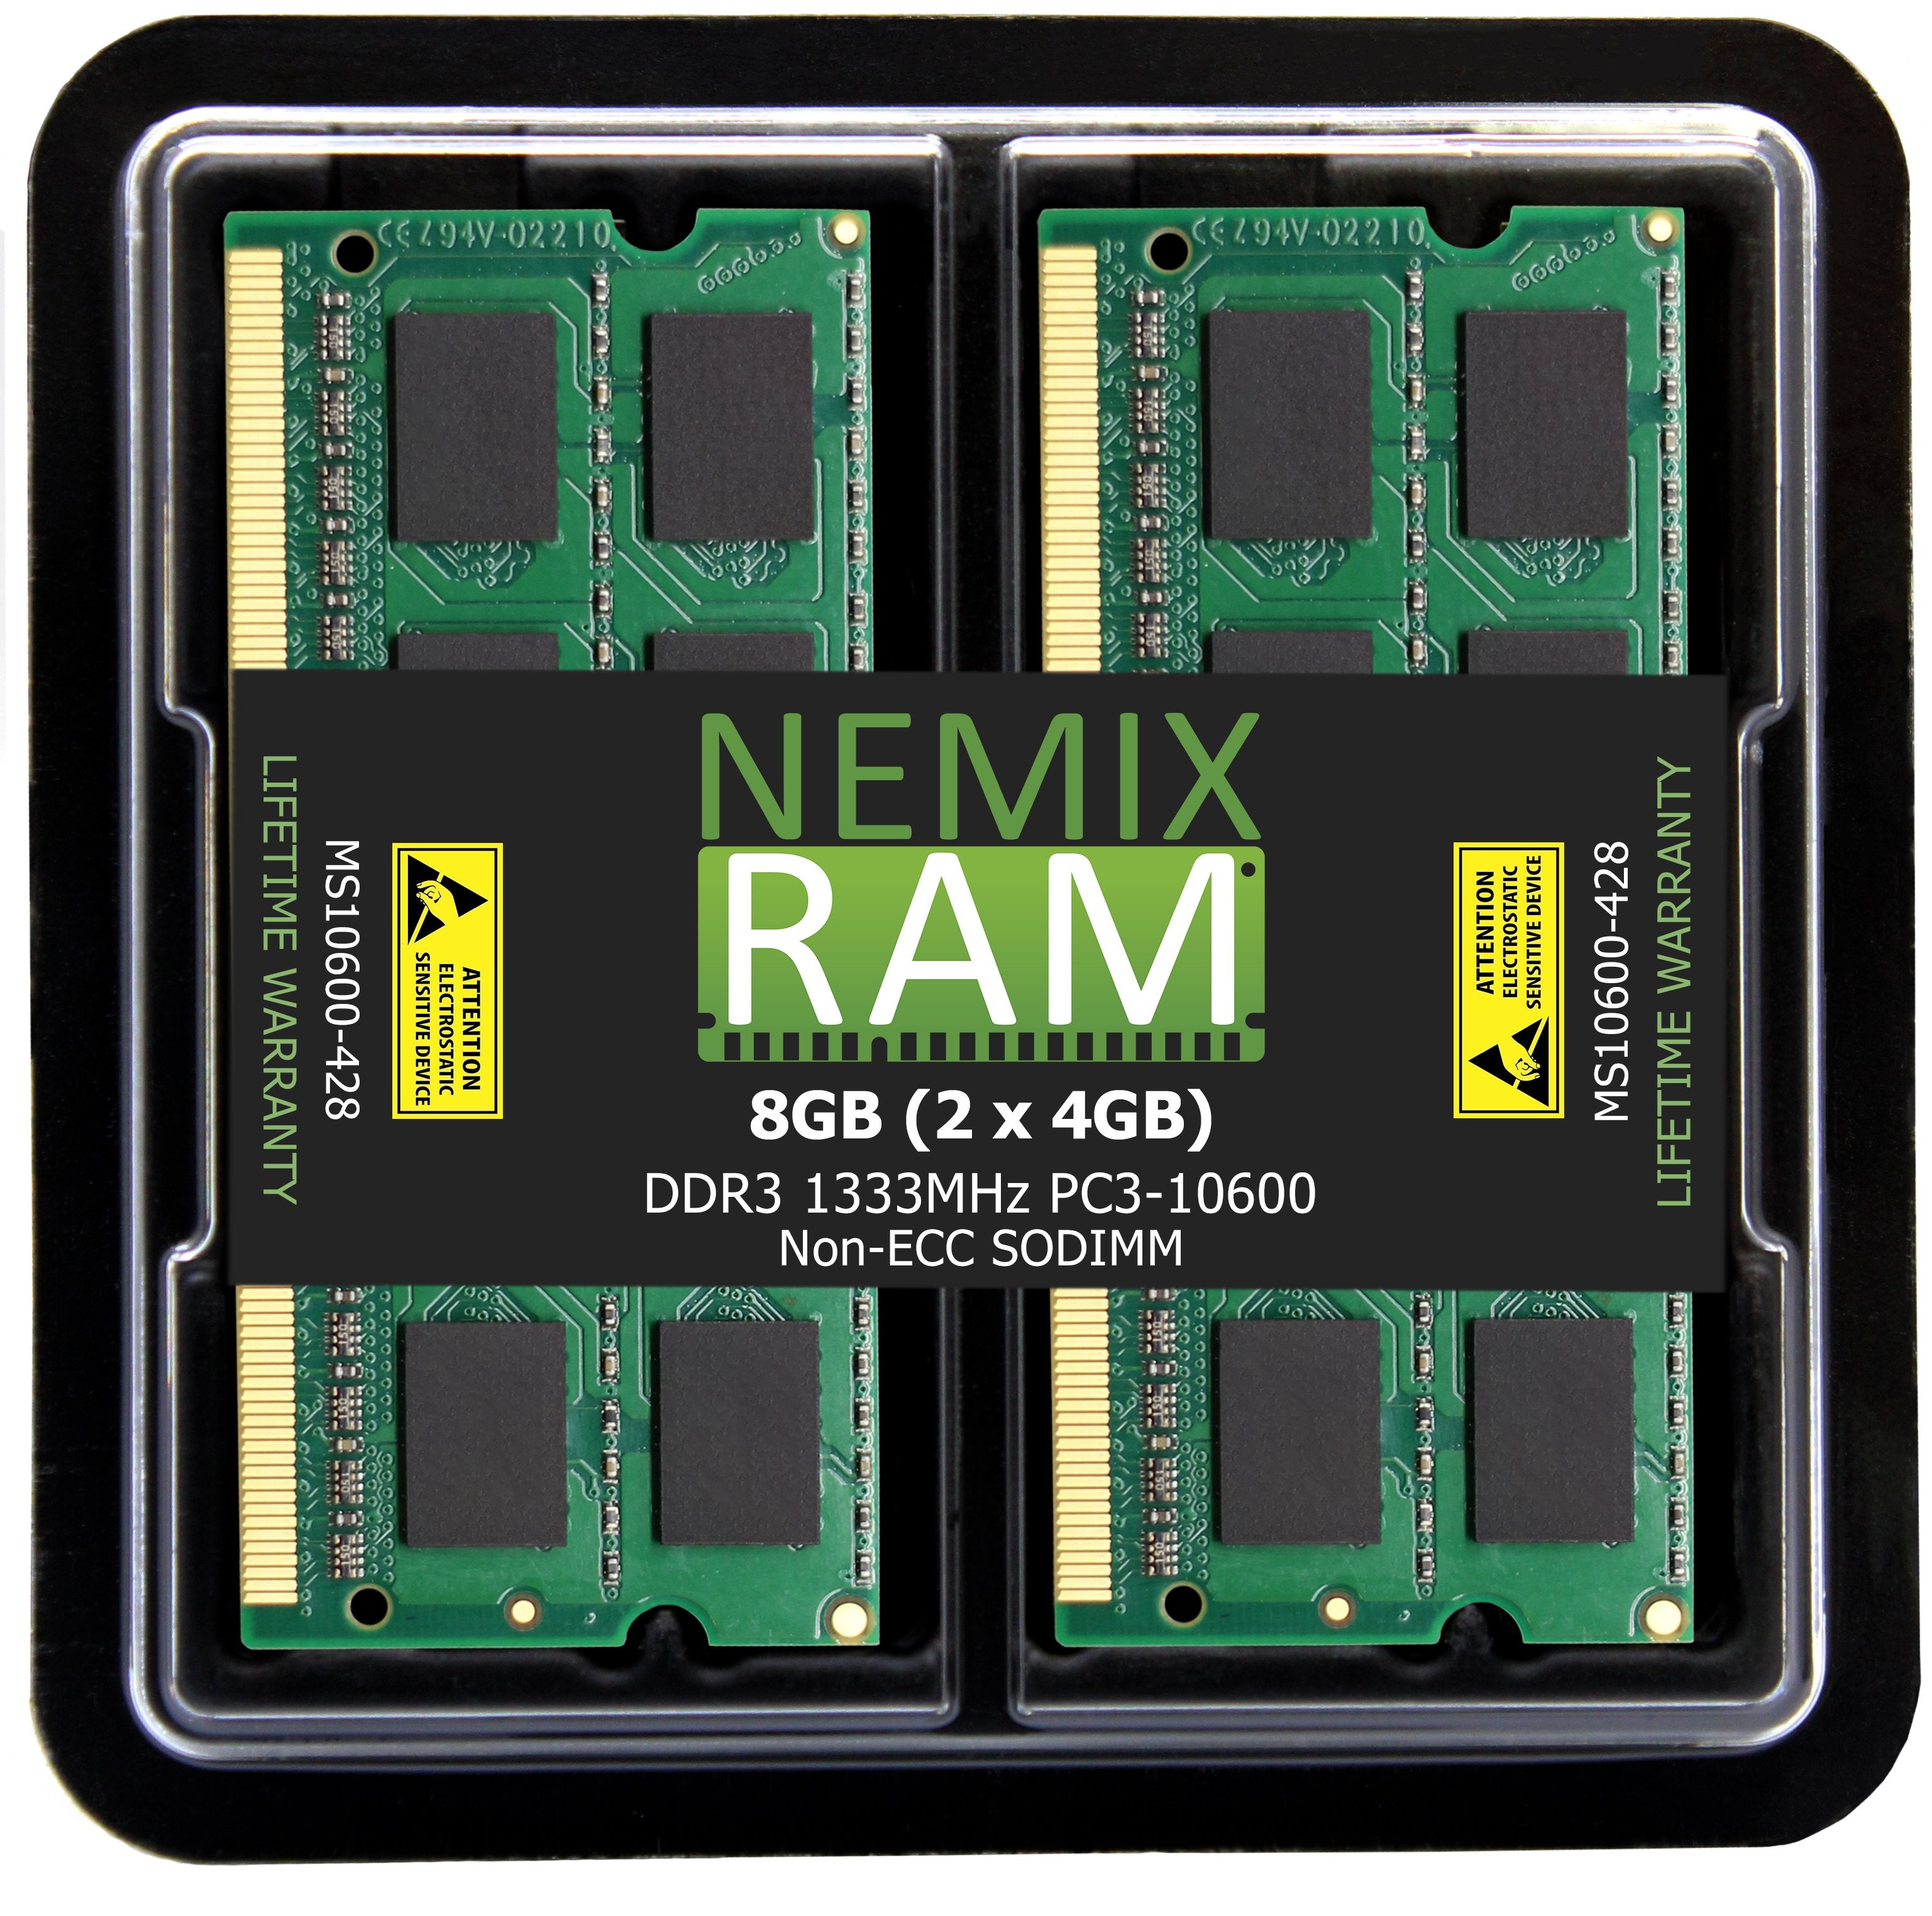 DDR3 1333MHZ PC3-10600 SODIMM for Apple Mac Mini 2011 (5,1 5,2 5,3)